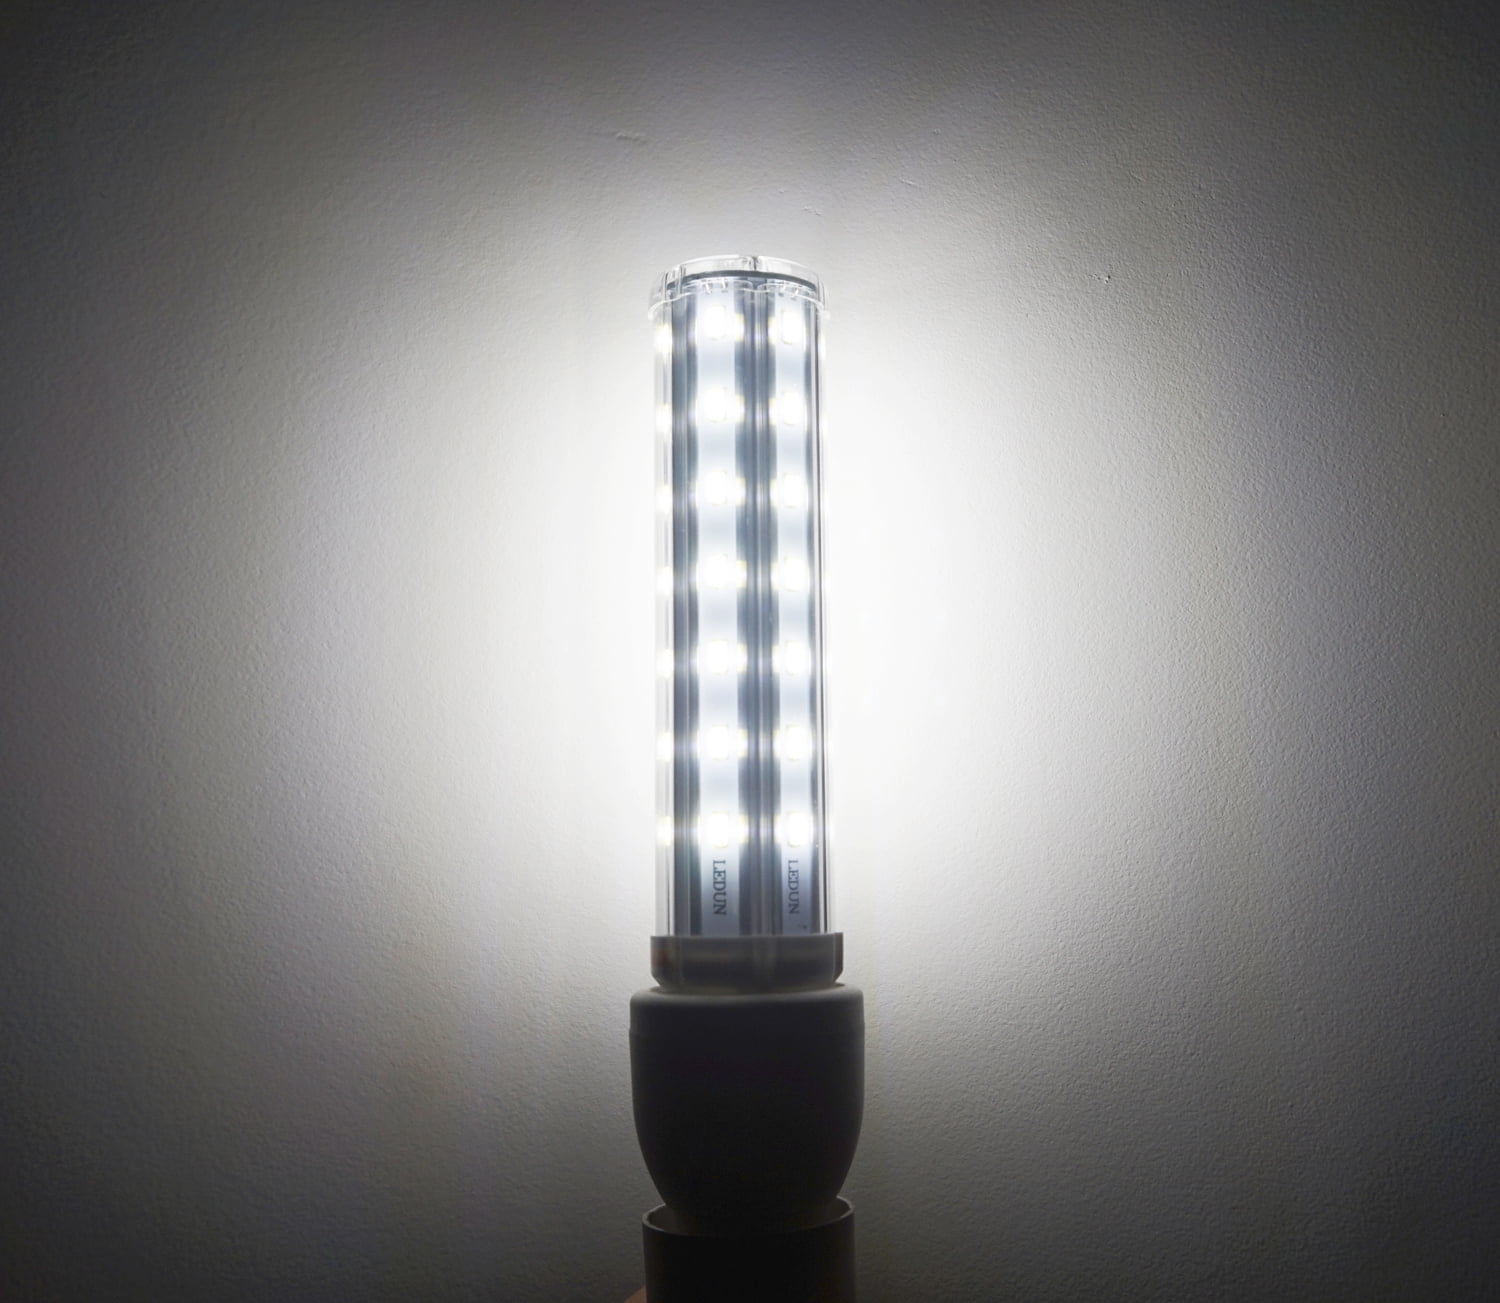 Bonlux G24 LED PL Retrofit Lamp Universal G24d 2-pin G24q 4-pin Base 21mm LED PLC Lamp 26w Equivalent Remove/Bypass The Ballast Daylight 6000k LED PL Horizontal Recessed G24q Bulb 